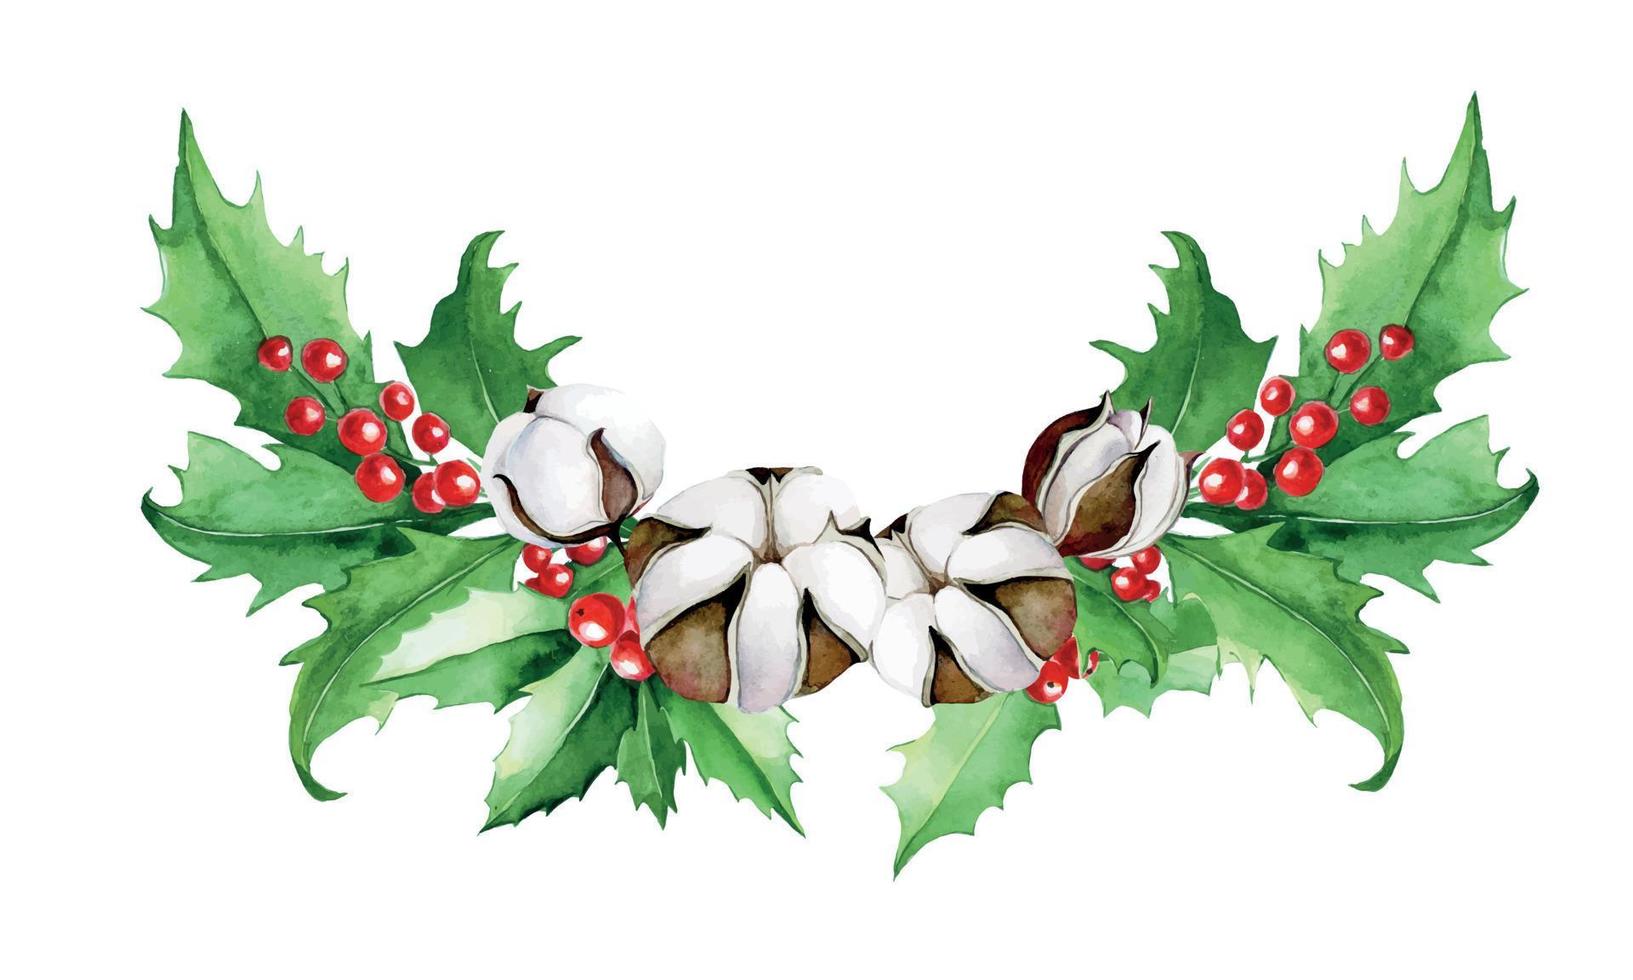 acuarela dibujo composición navideña, ramo de hojas de acebo y bayas y flores de algodón. imágenes prediseñadas, decoración para año nuevo, navidad vector